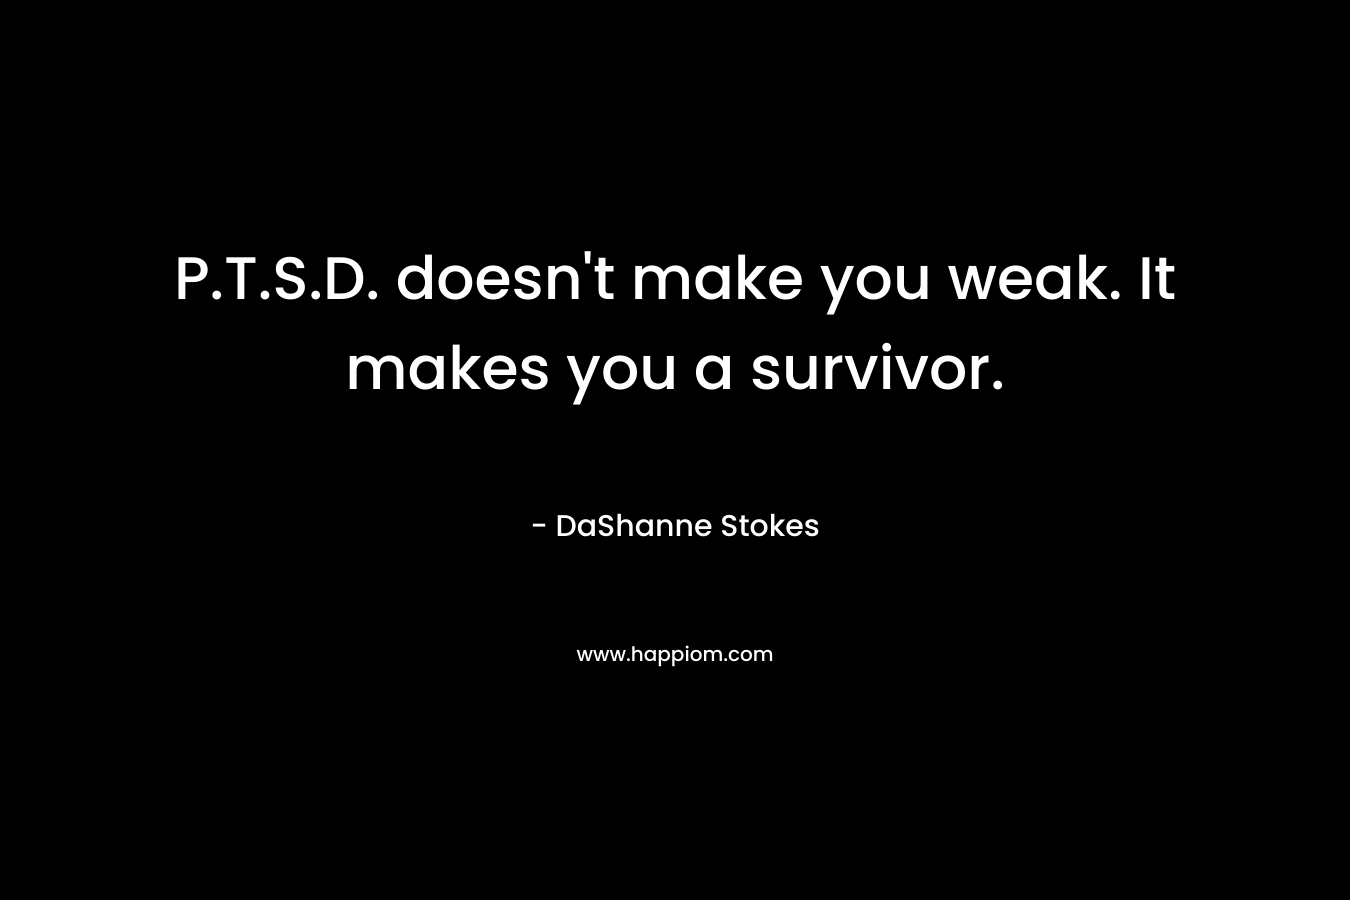 P.T.S.D. doesn't make you weak. It makes you a survivor.